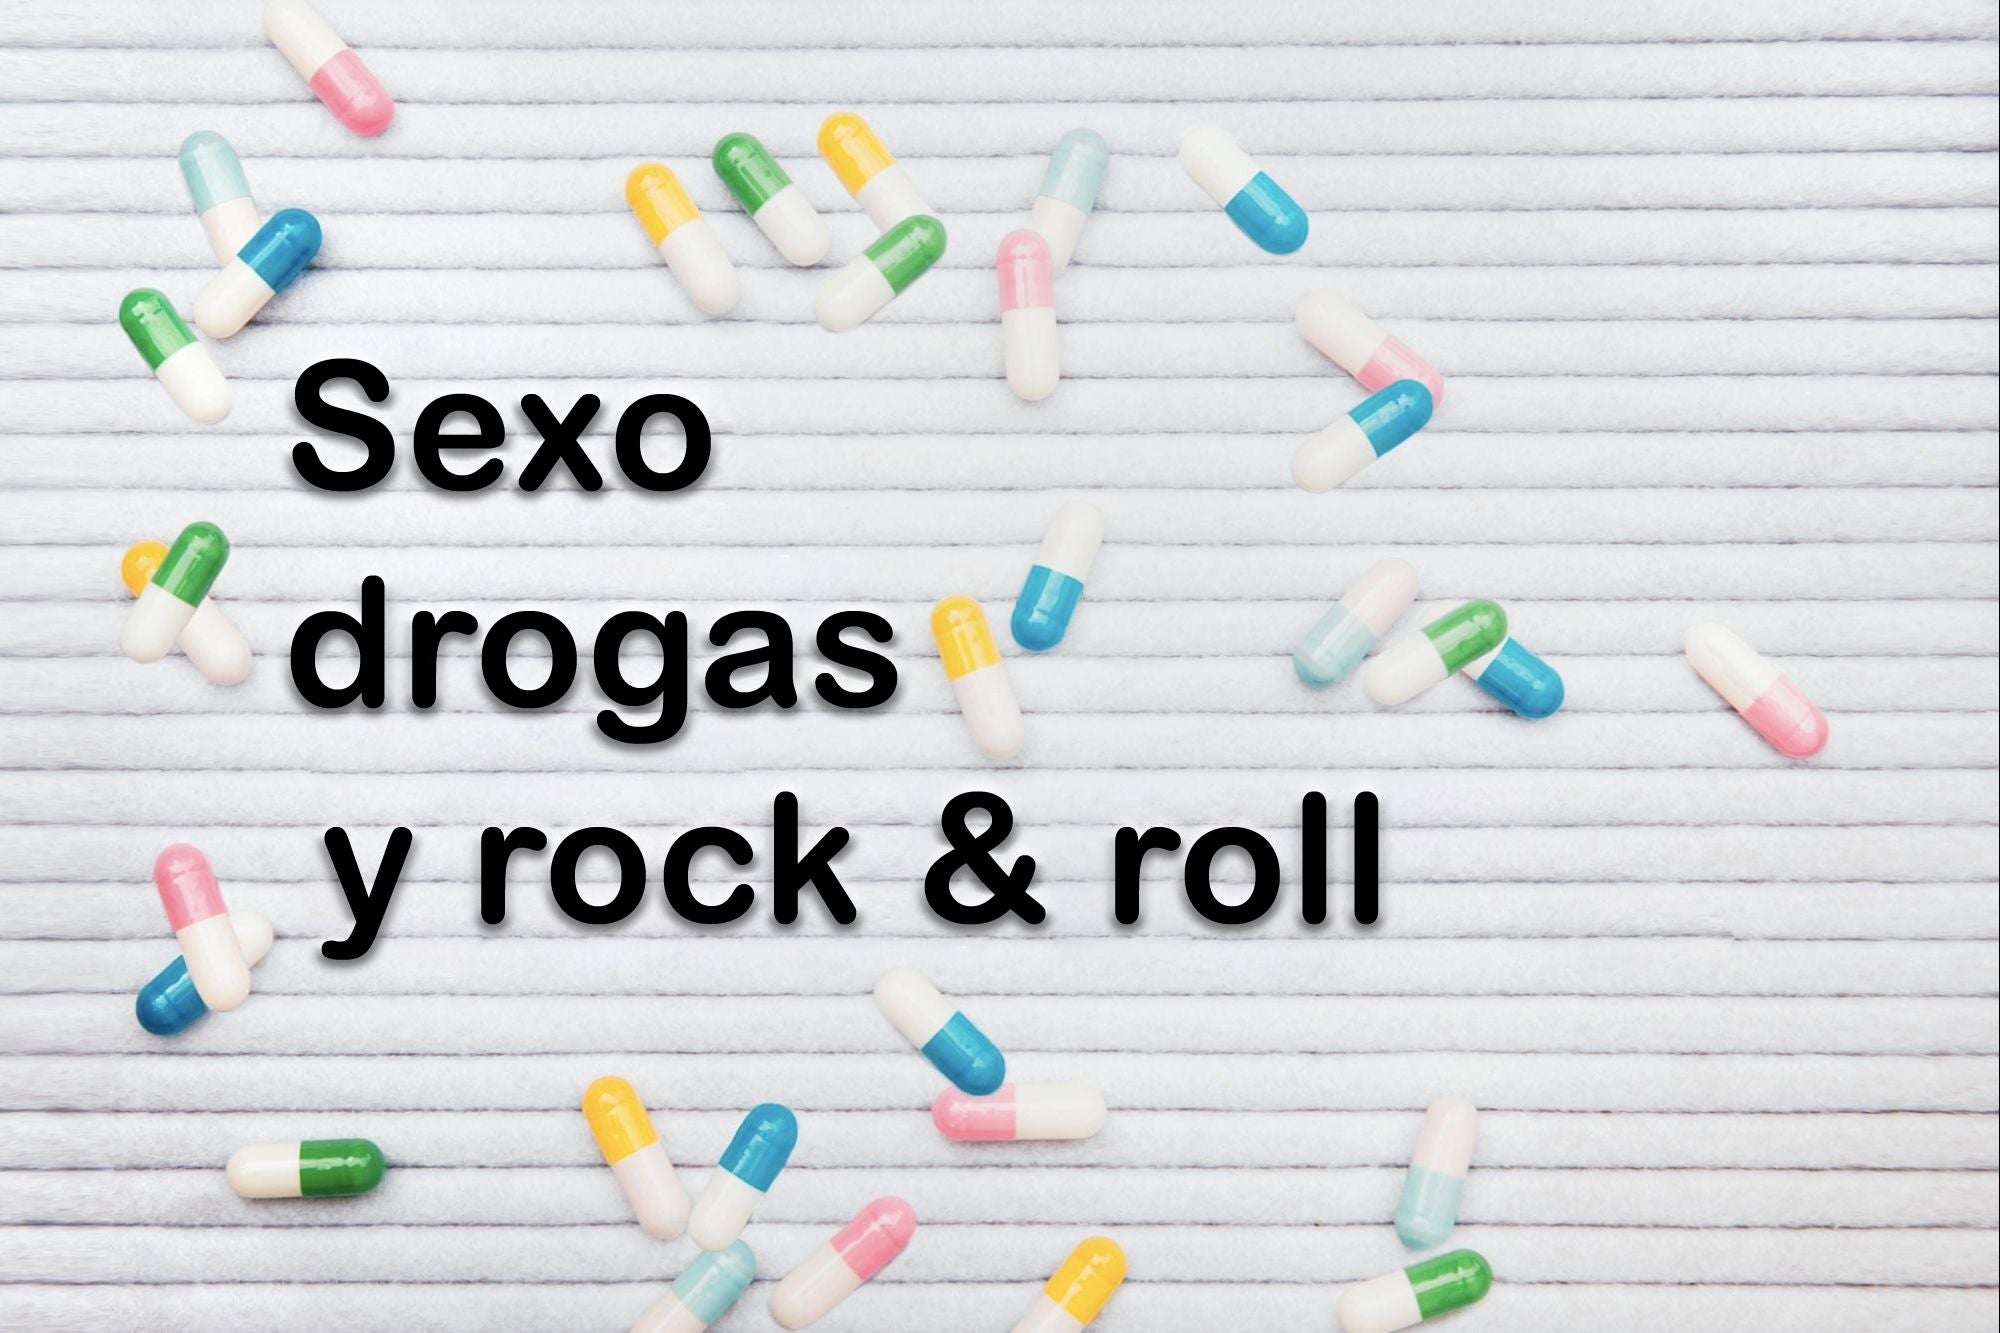 Sexo, drogas y rock and roll en tiempos de coronavirus